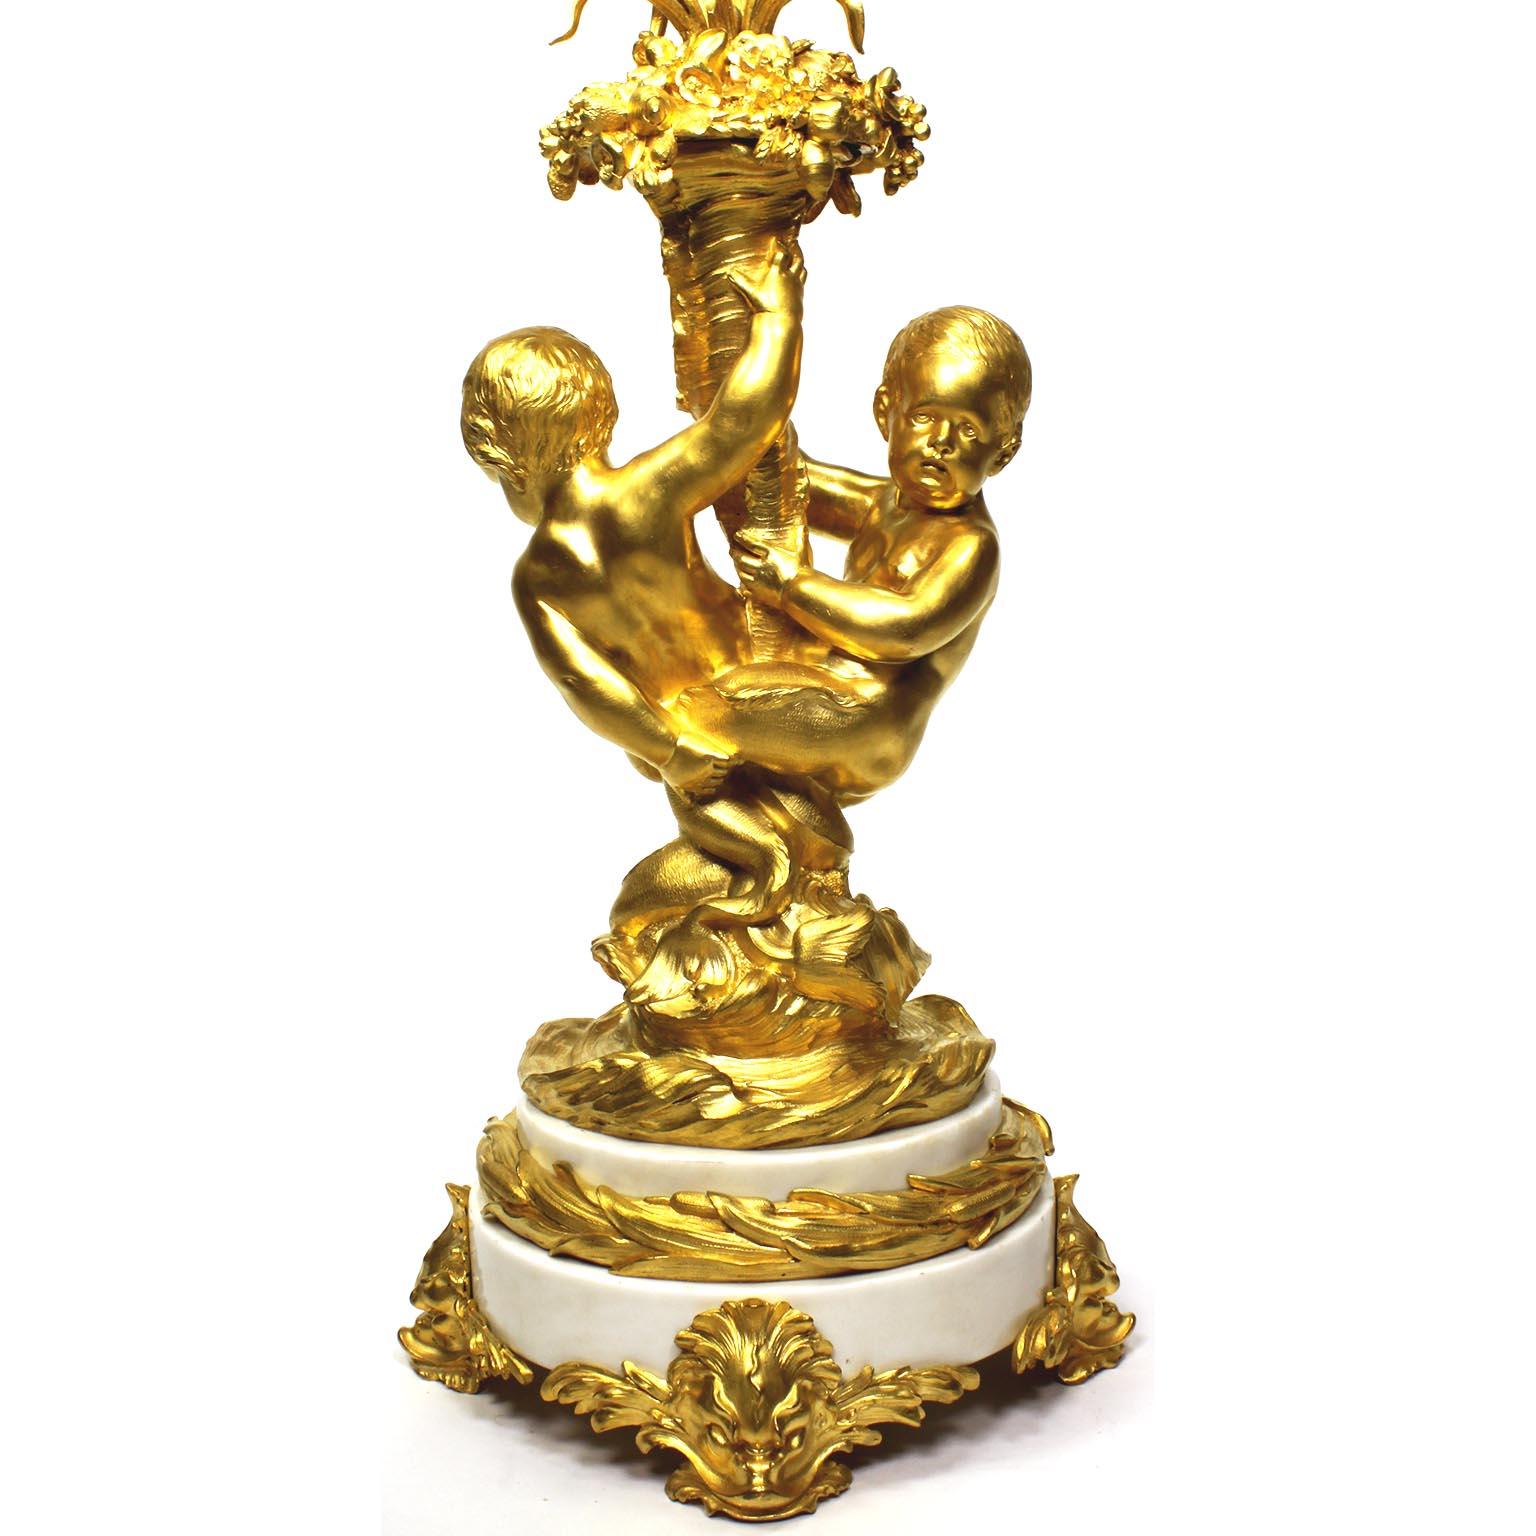 Très beau candélabre à trois lumières de style Louis XV en bronze doré et marbre blanc, attribué à François Linke (1855-1946). L'unique groupe allégorique et fantaisiste en bronze doré finement ciselé de la Belle Époque représentant une paire de